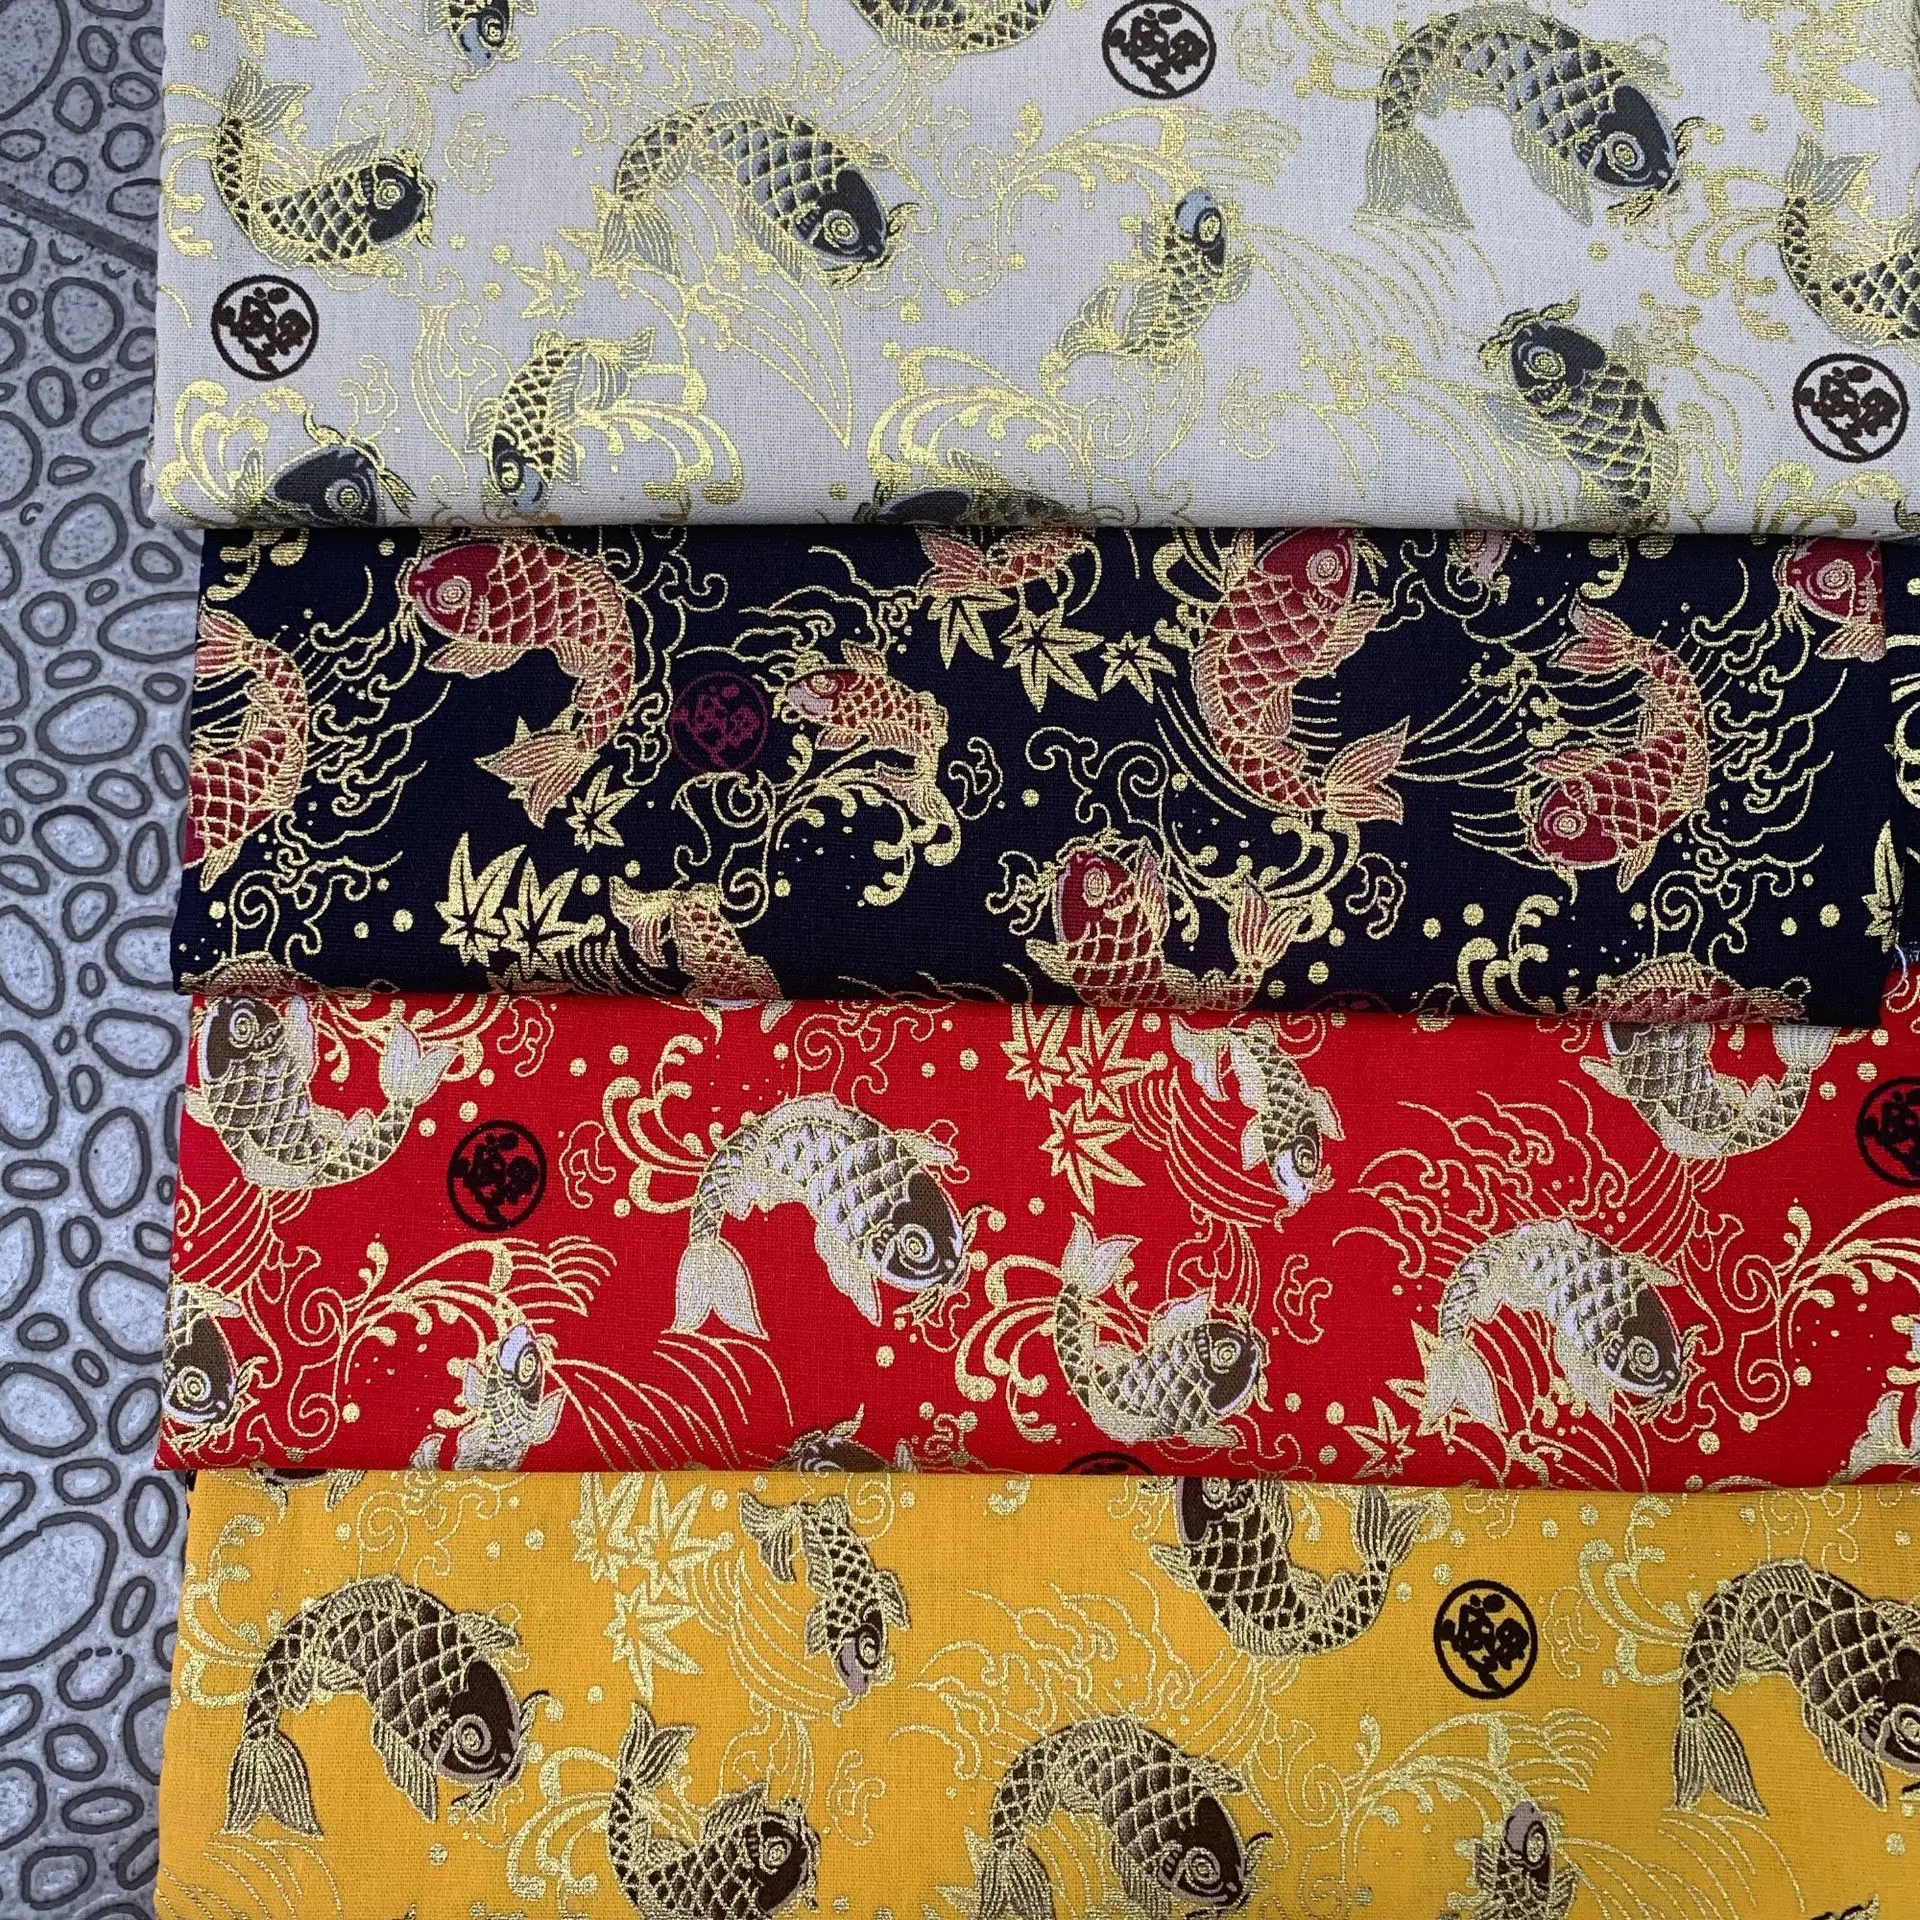 ชุดกิโมโนญี่ปุ่นสุดหรู,ชุดผ้าคอตตอนพร้อมปั๊มลายปลาเมทัลลิกสีทองสำหรับวันหยุดจัมพ์สูทผ้าปูโต๊ะผ้าปูที่นอน